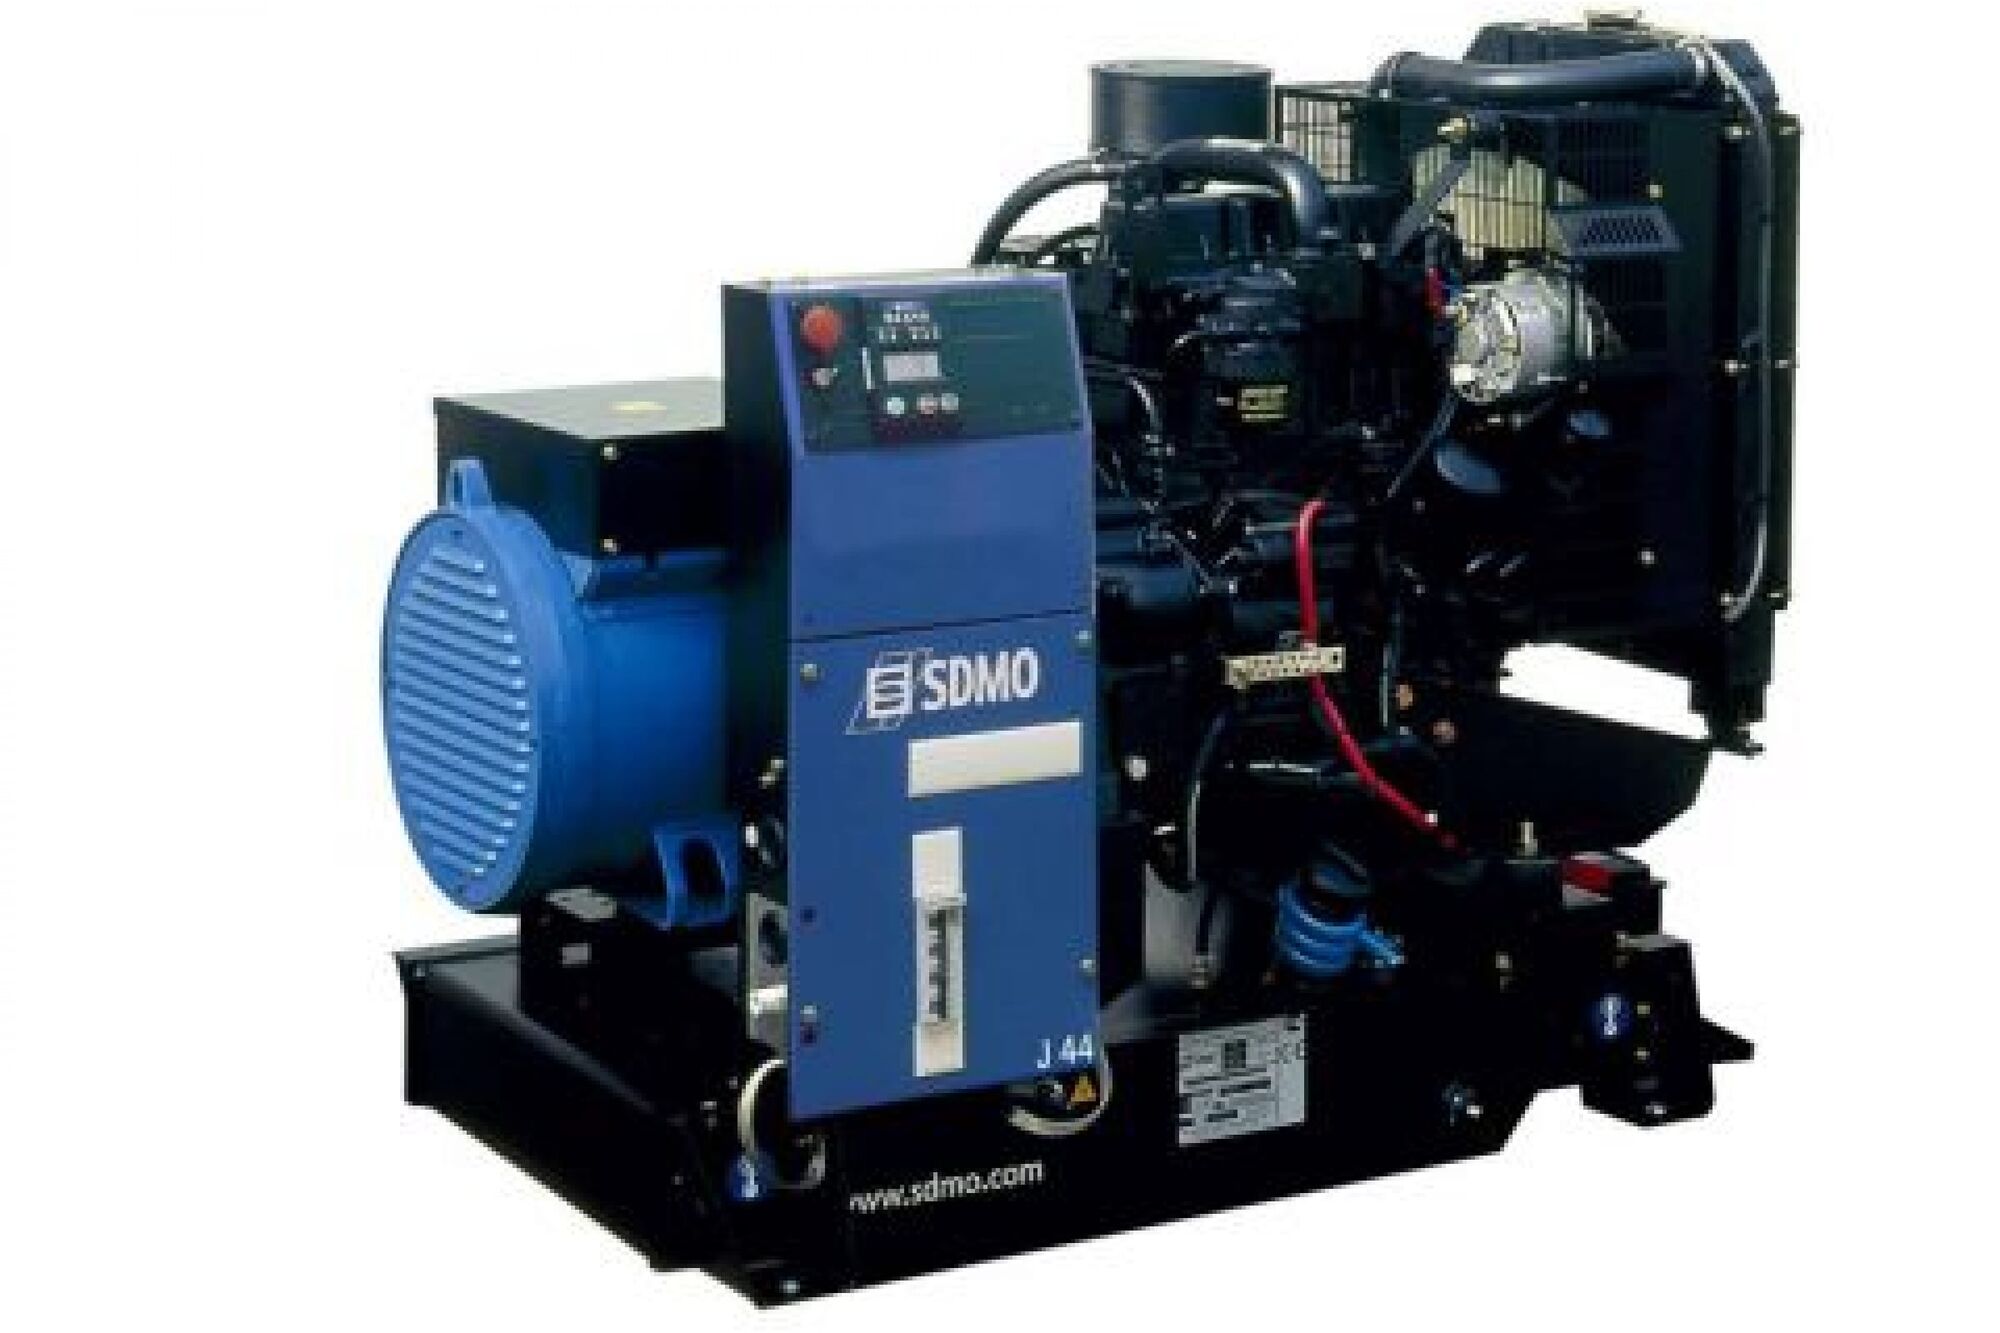 Дизельный генератор KOHLER-SDMO J44 32 кВт, 380/220 В 101154319